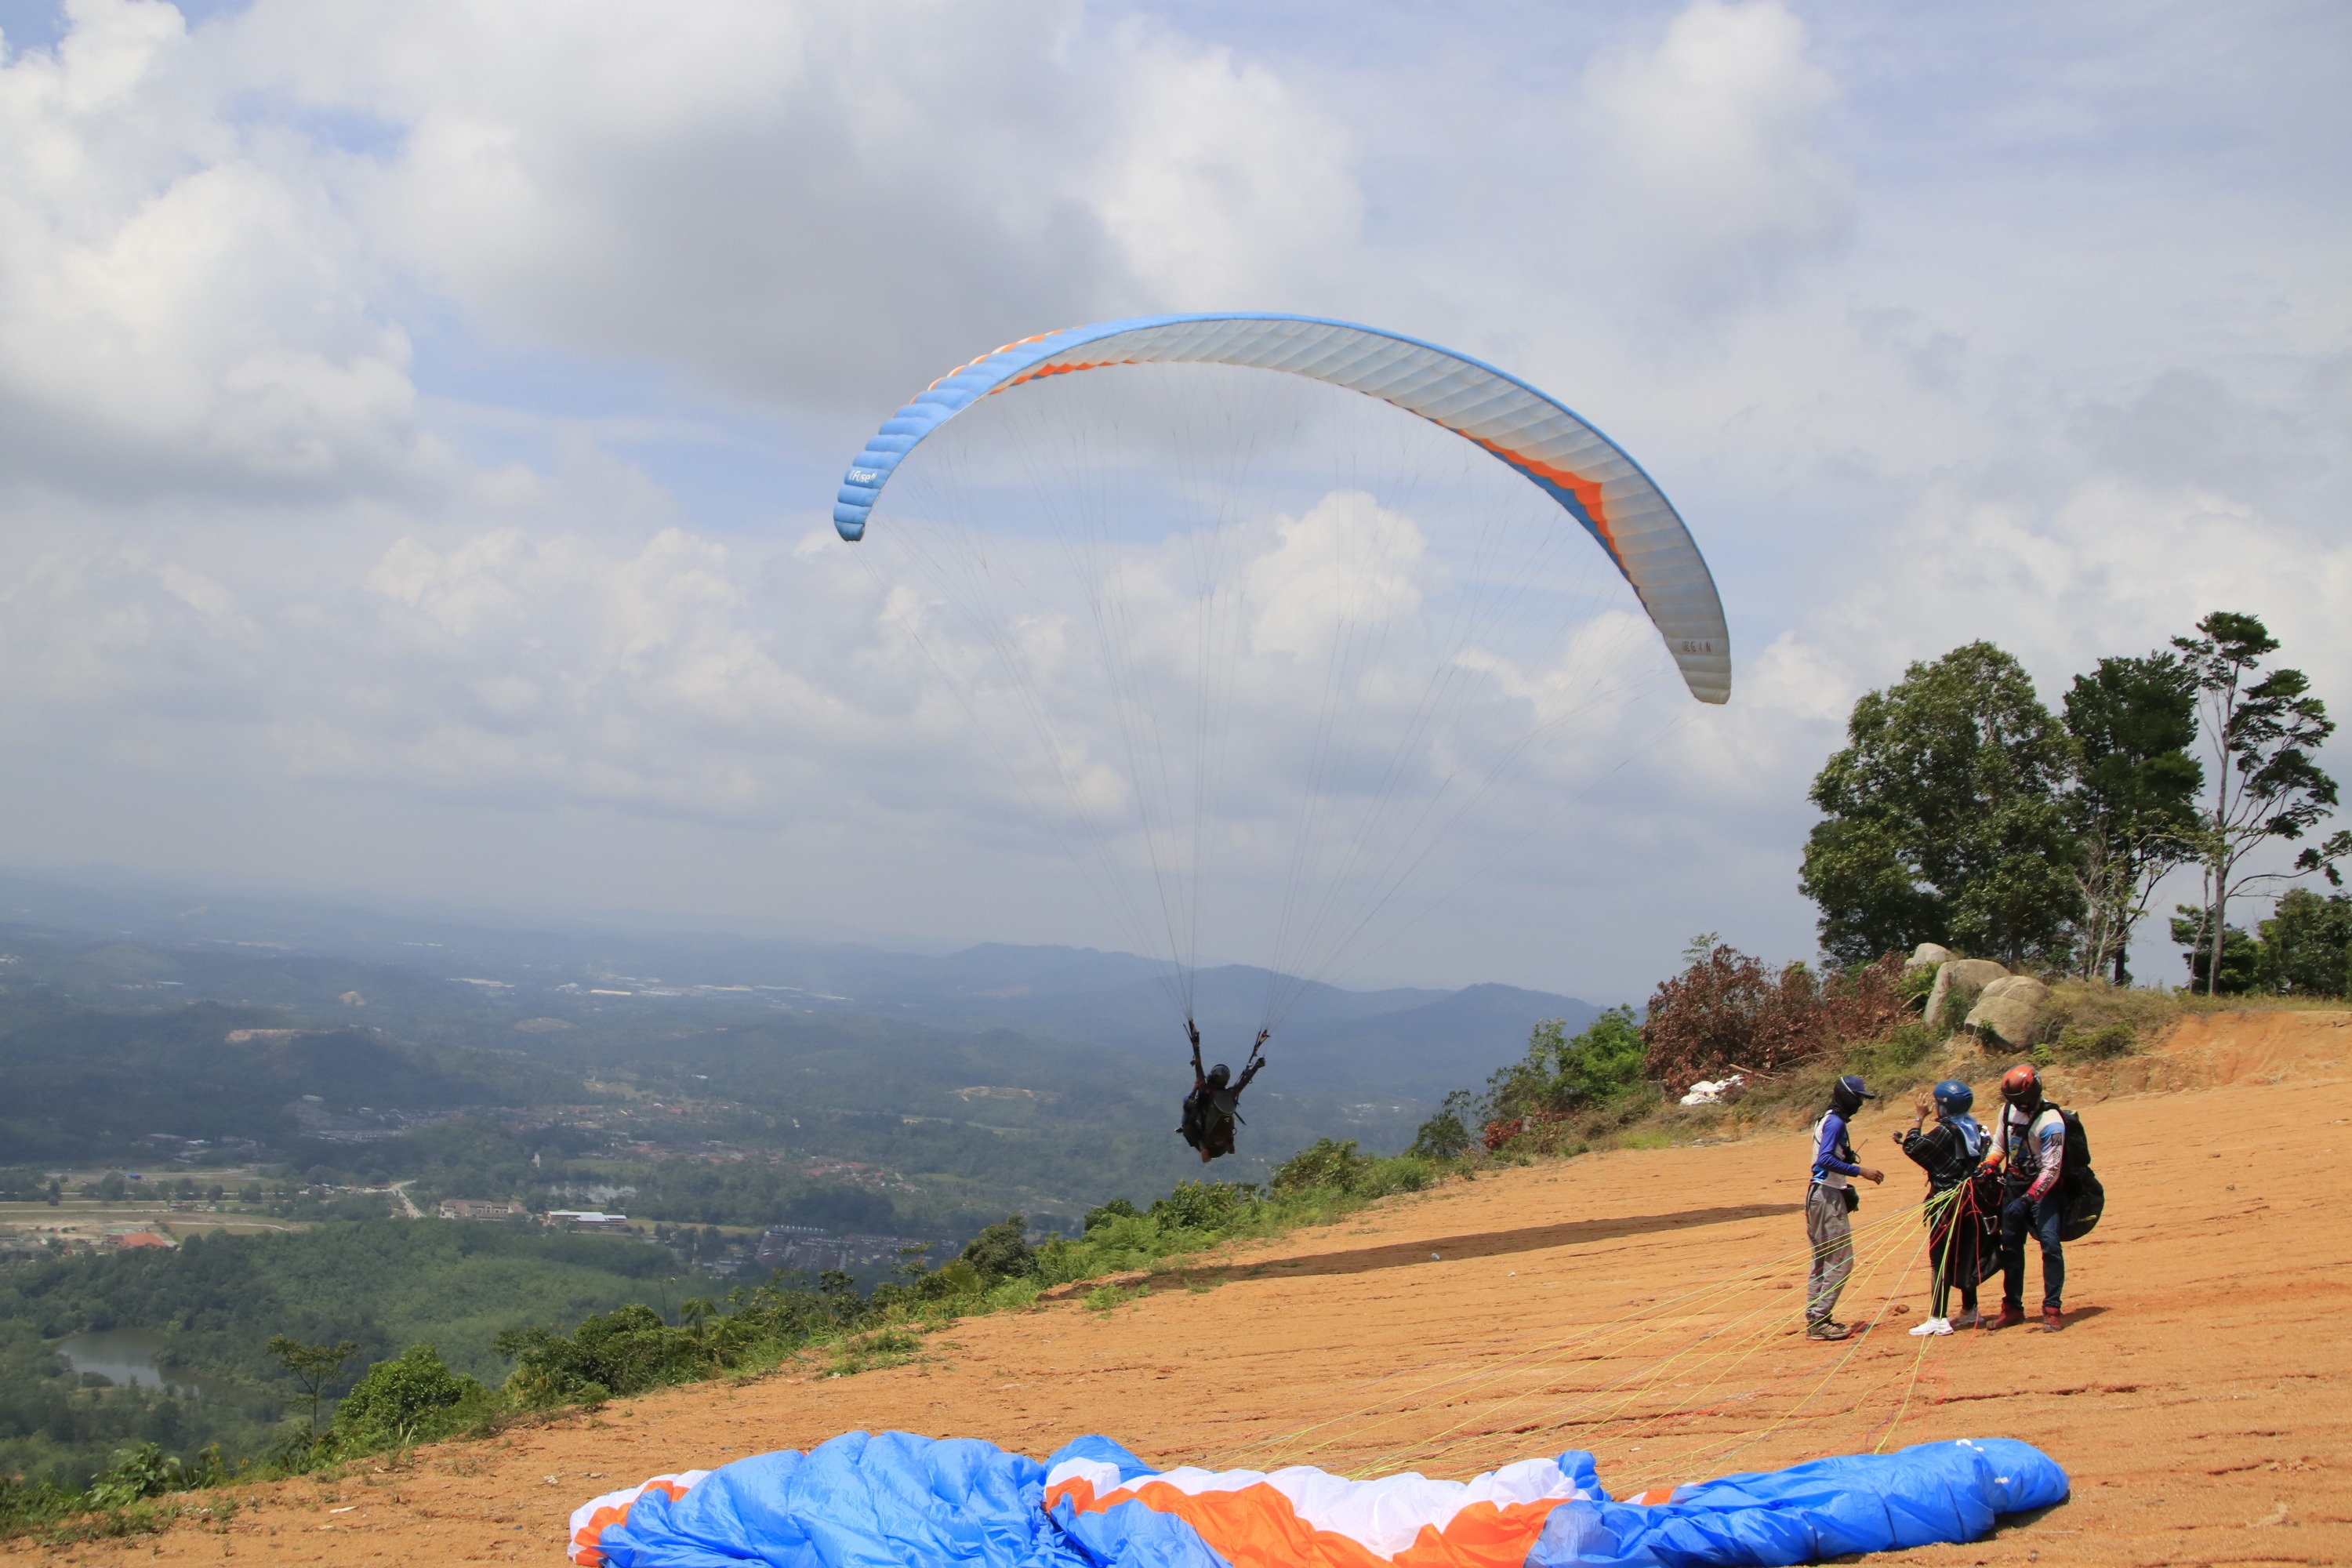 雪蘭莪專業雙人滑翔傘體驗